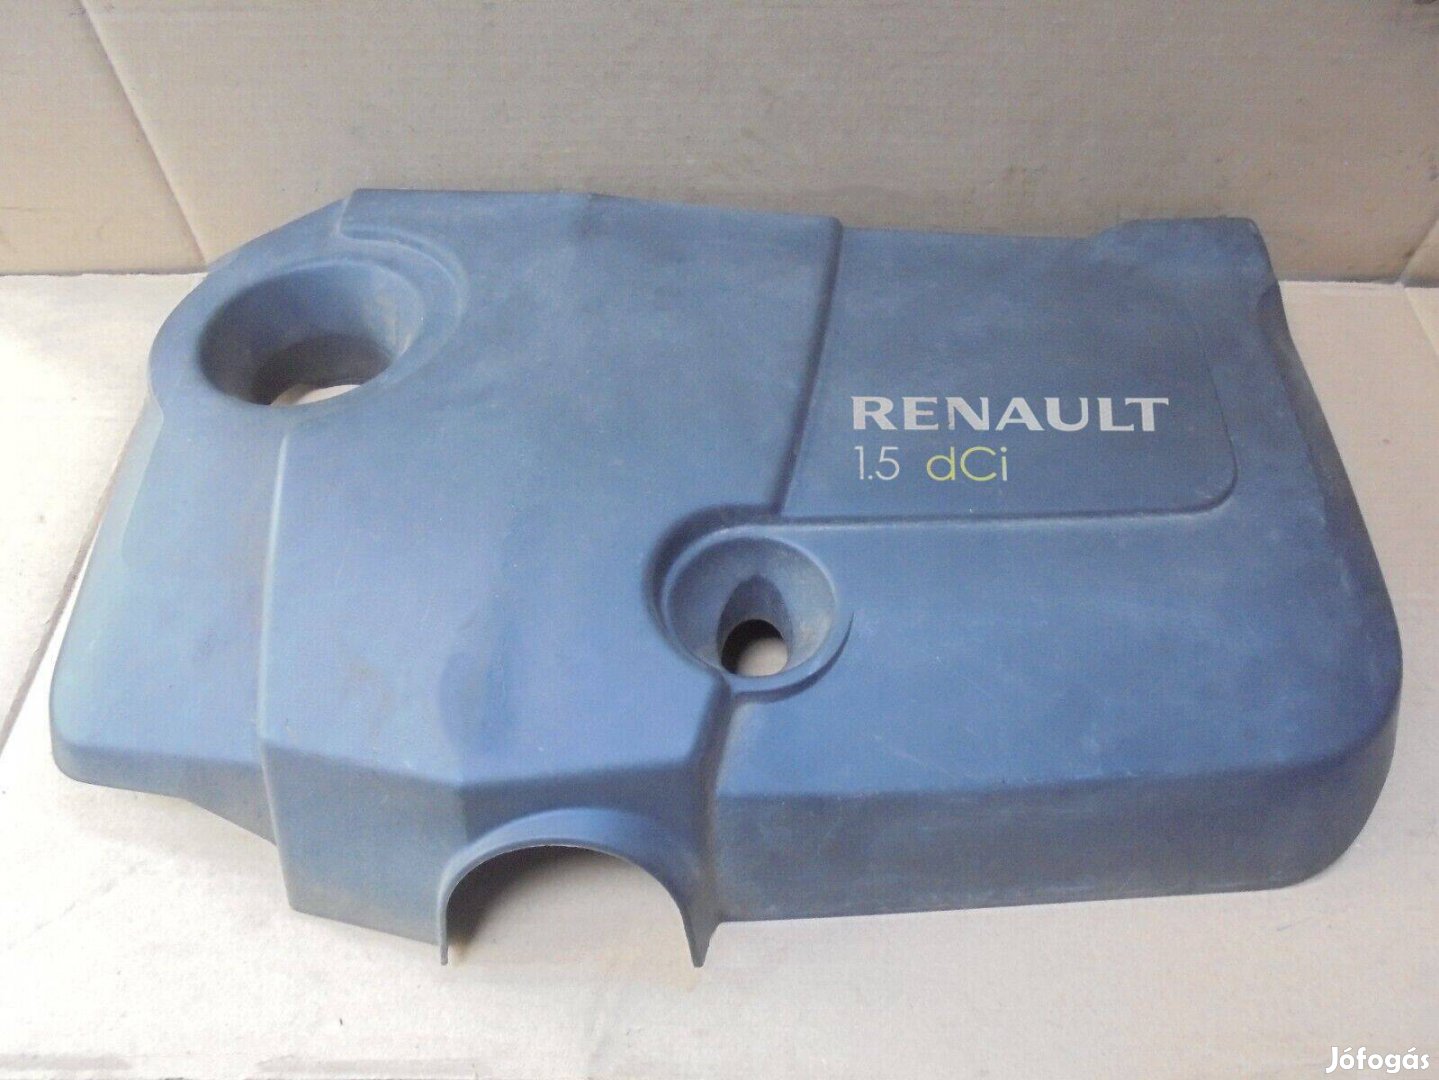 Eladó Renault 1.5 dCi felső motorburkolat (Megane/Scenic K9K)